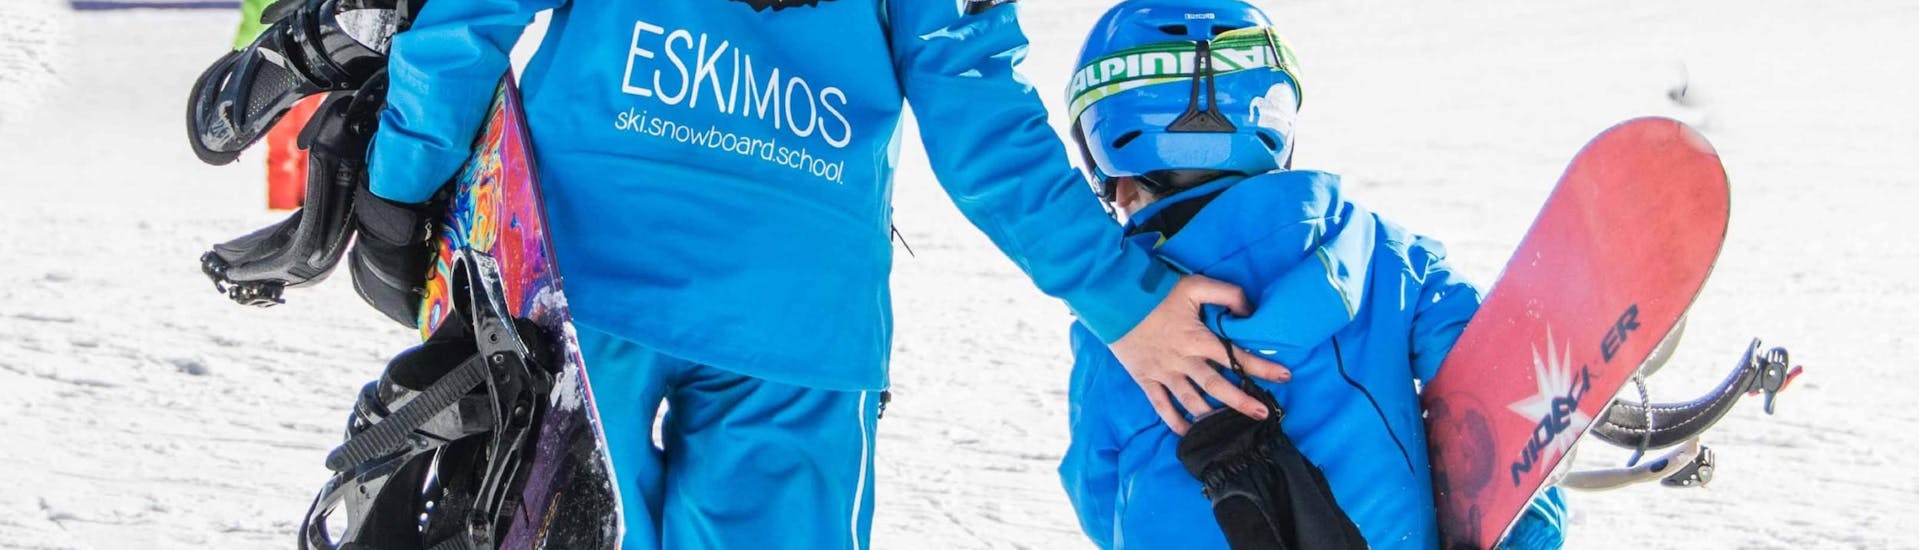 Clases de snowboard a partir de 6 años para debutantes con Ski School ESKIMOS Saas-Fee.